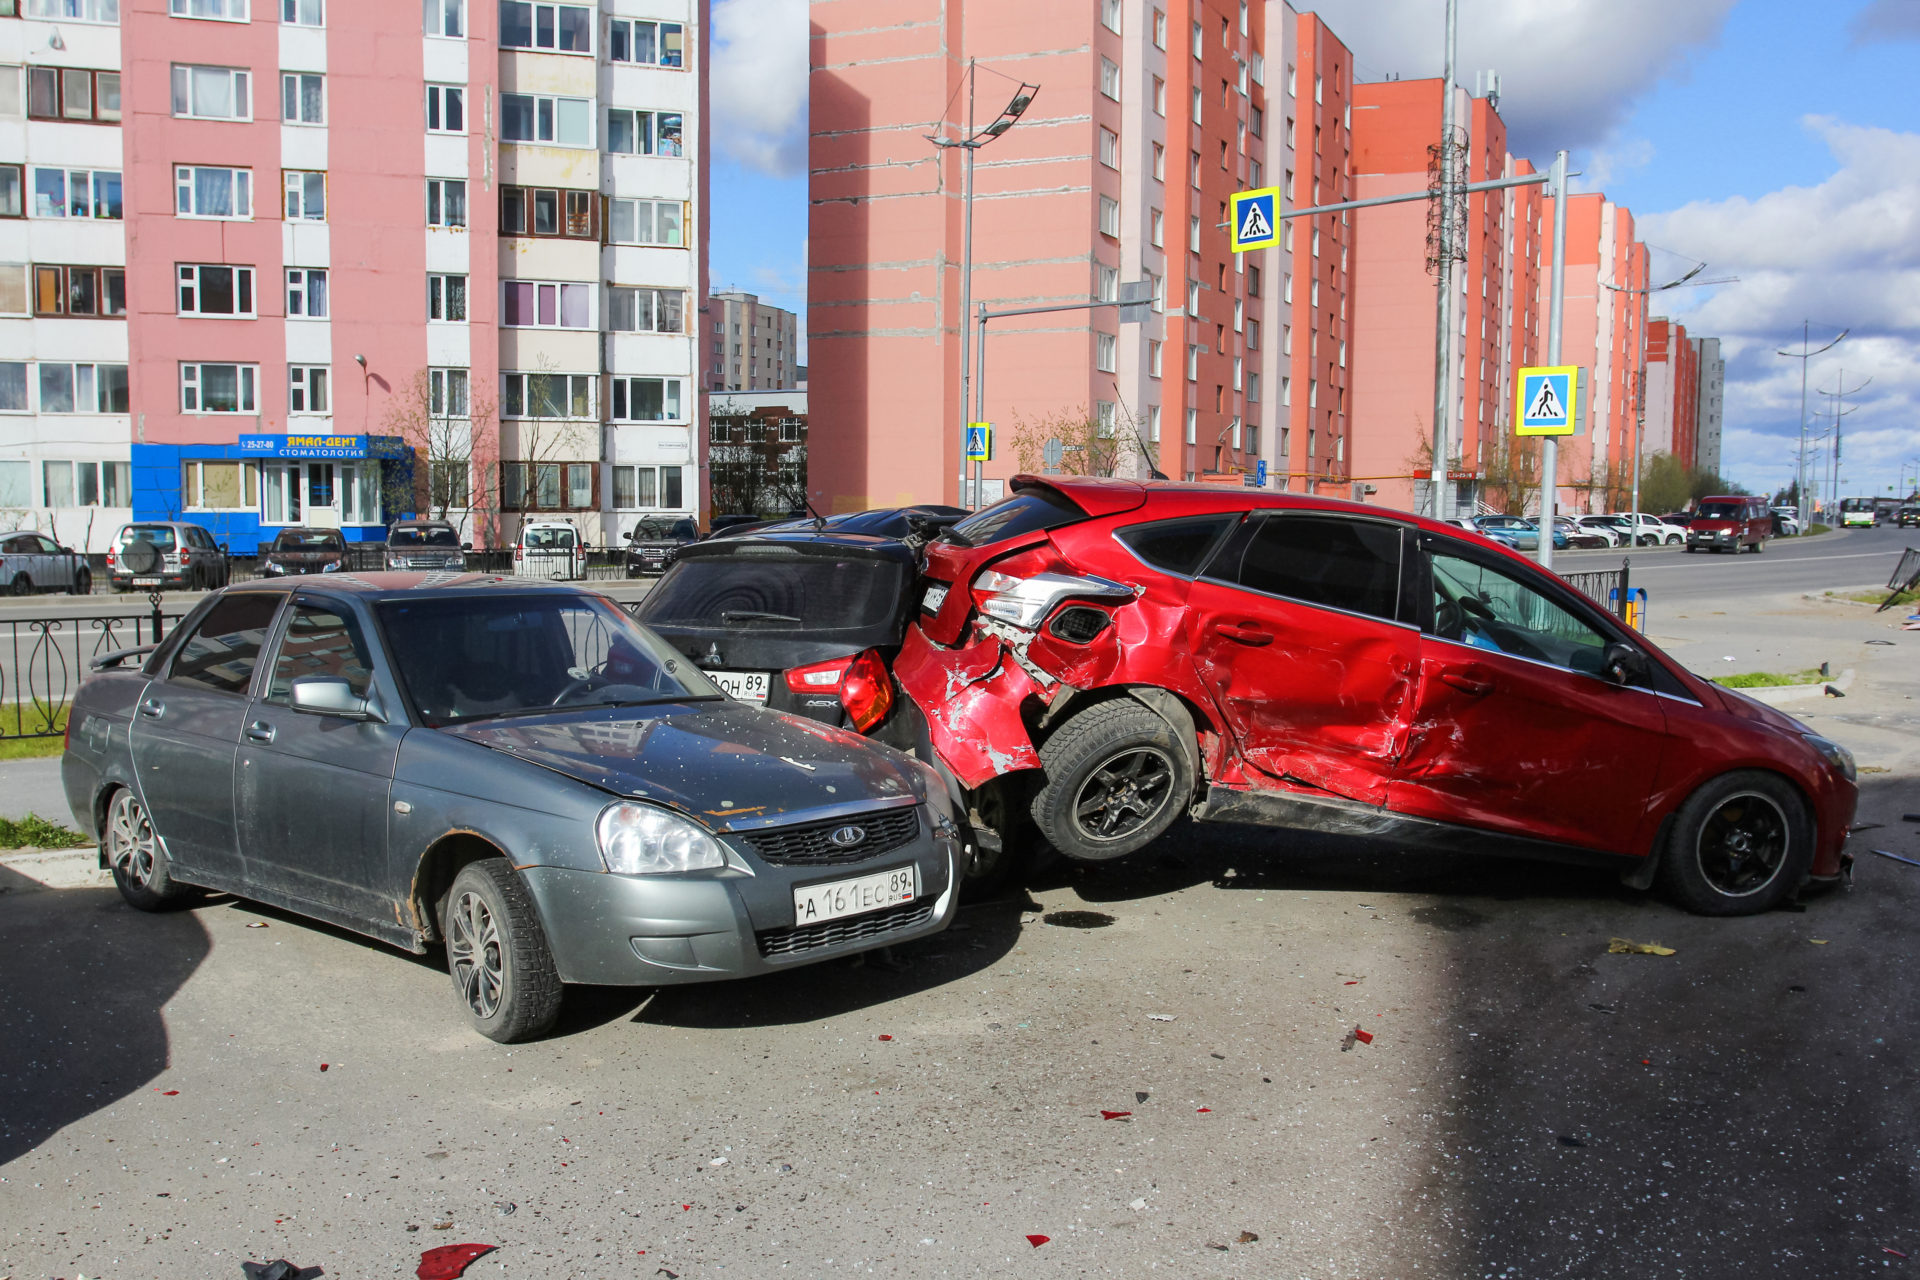 A multi-car pileup in a parking lot represents a lawsuit with multiple plaintiffs